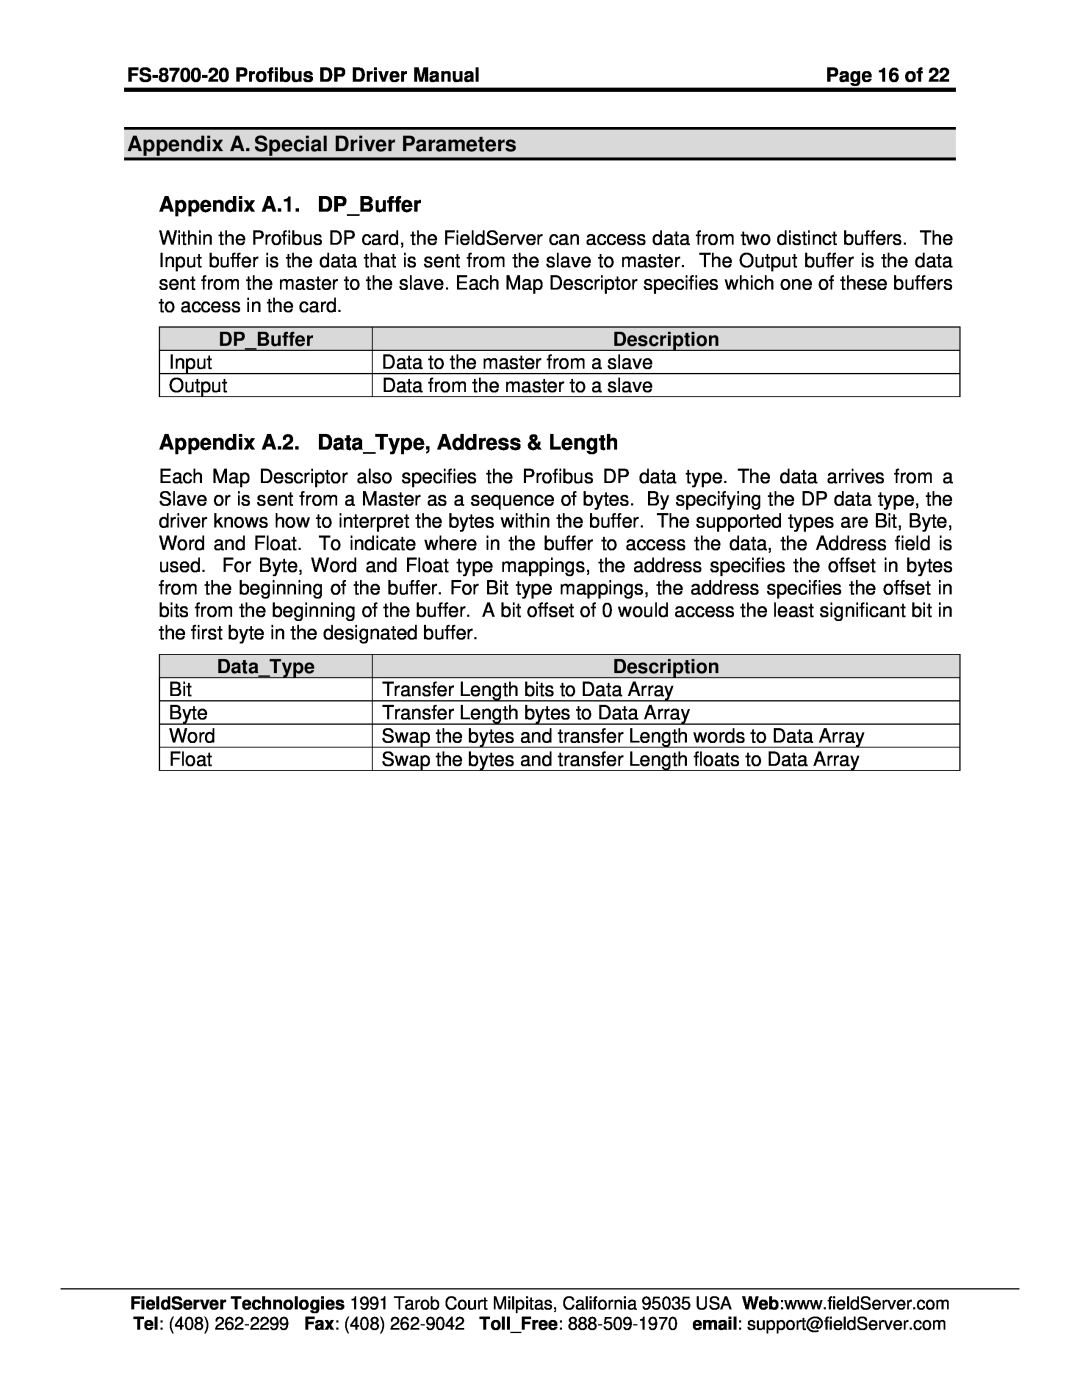 FieldServer FS-8700-20 instruction manual Appendix A. Special Driver Parameters Appendix A.1. DPBuffer 